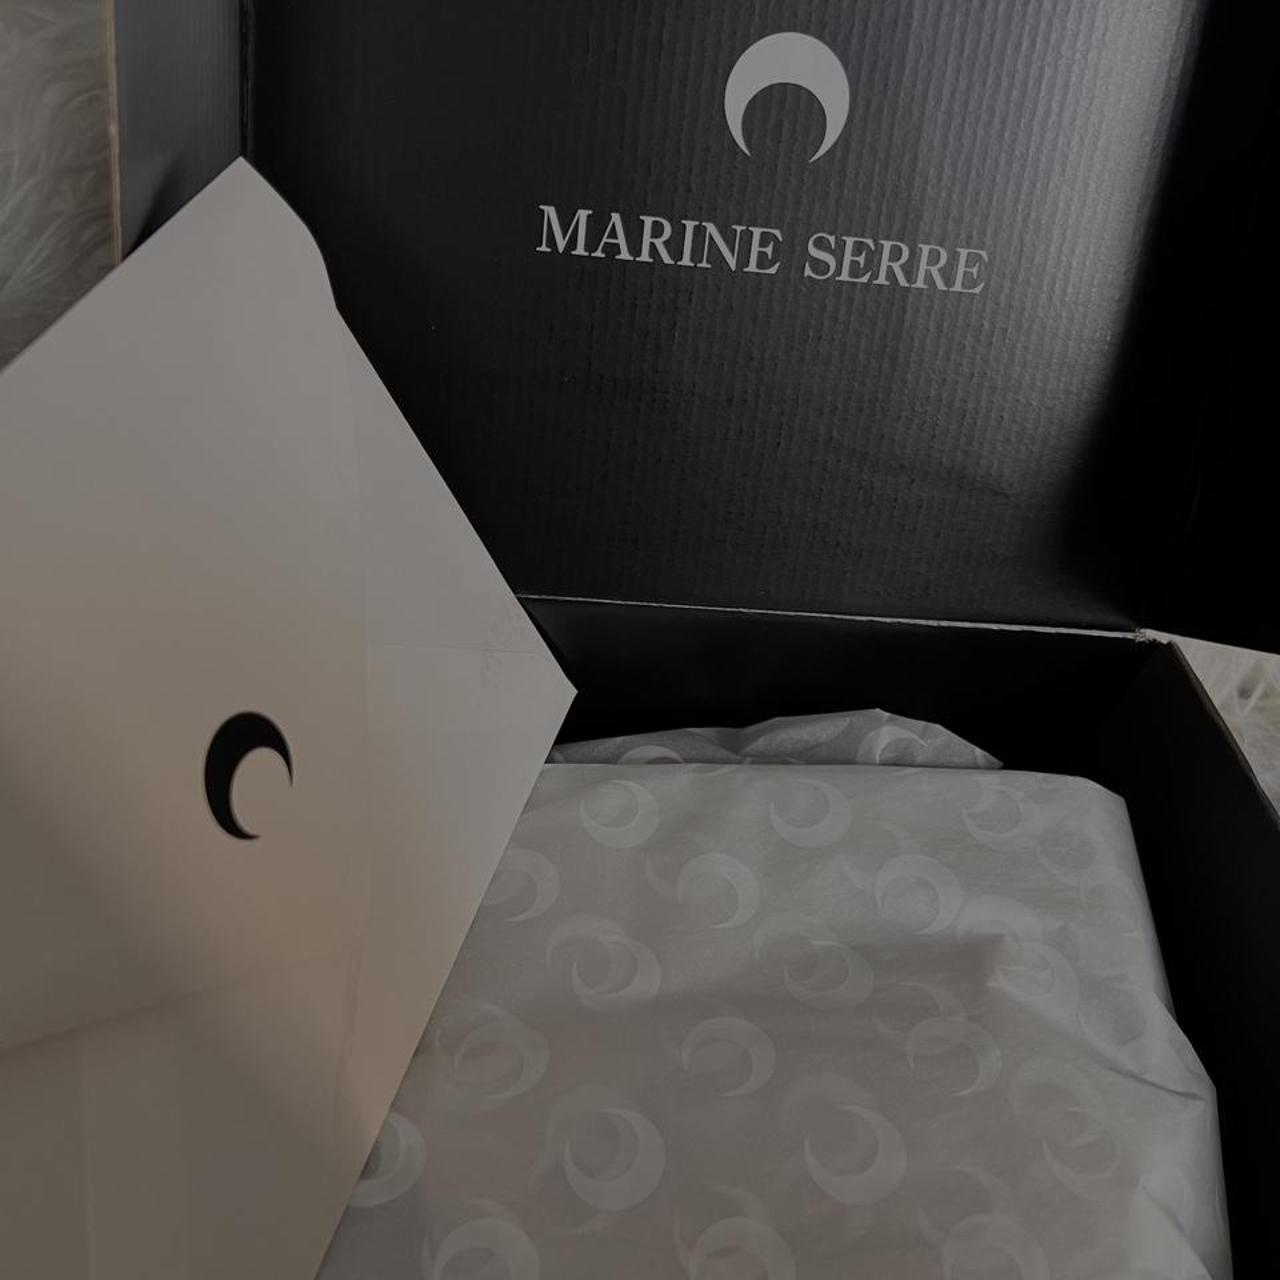 MARINE SERRE SSENSE Exclusive Red Sport - Depop